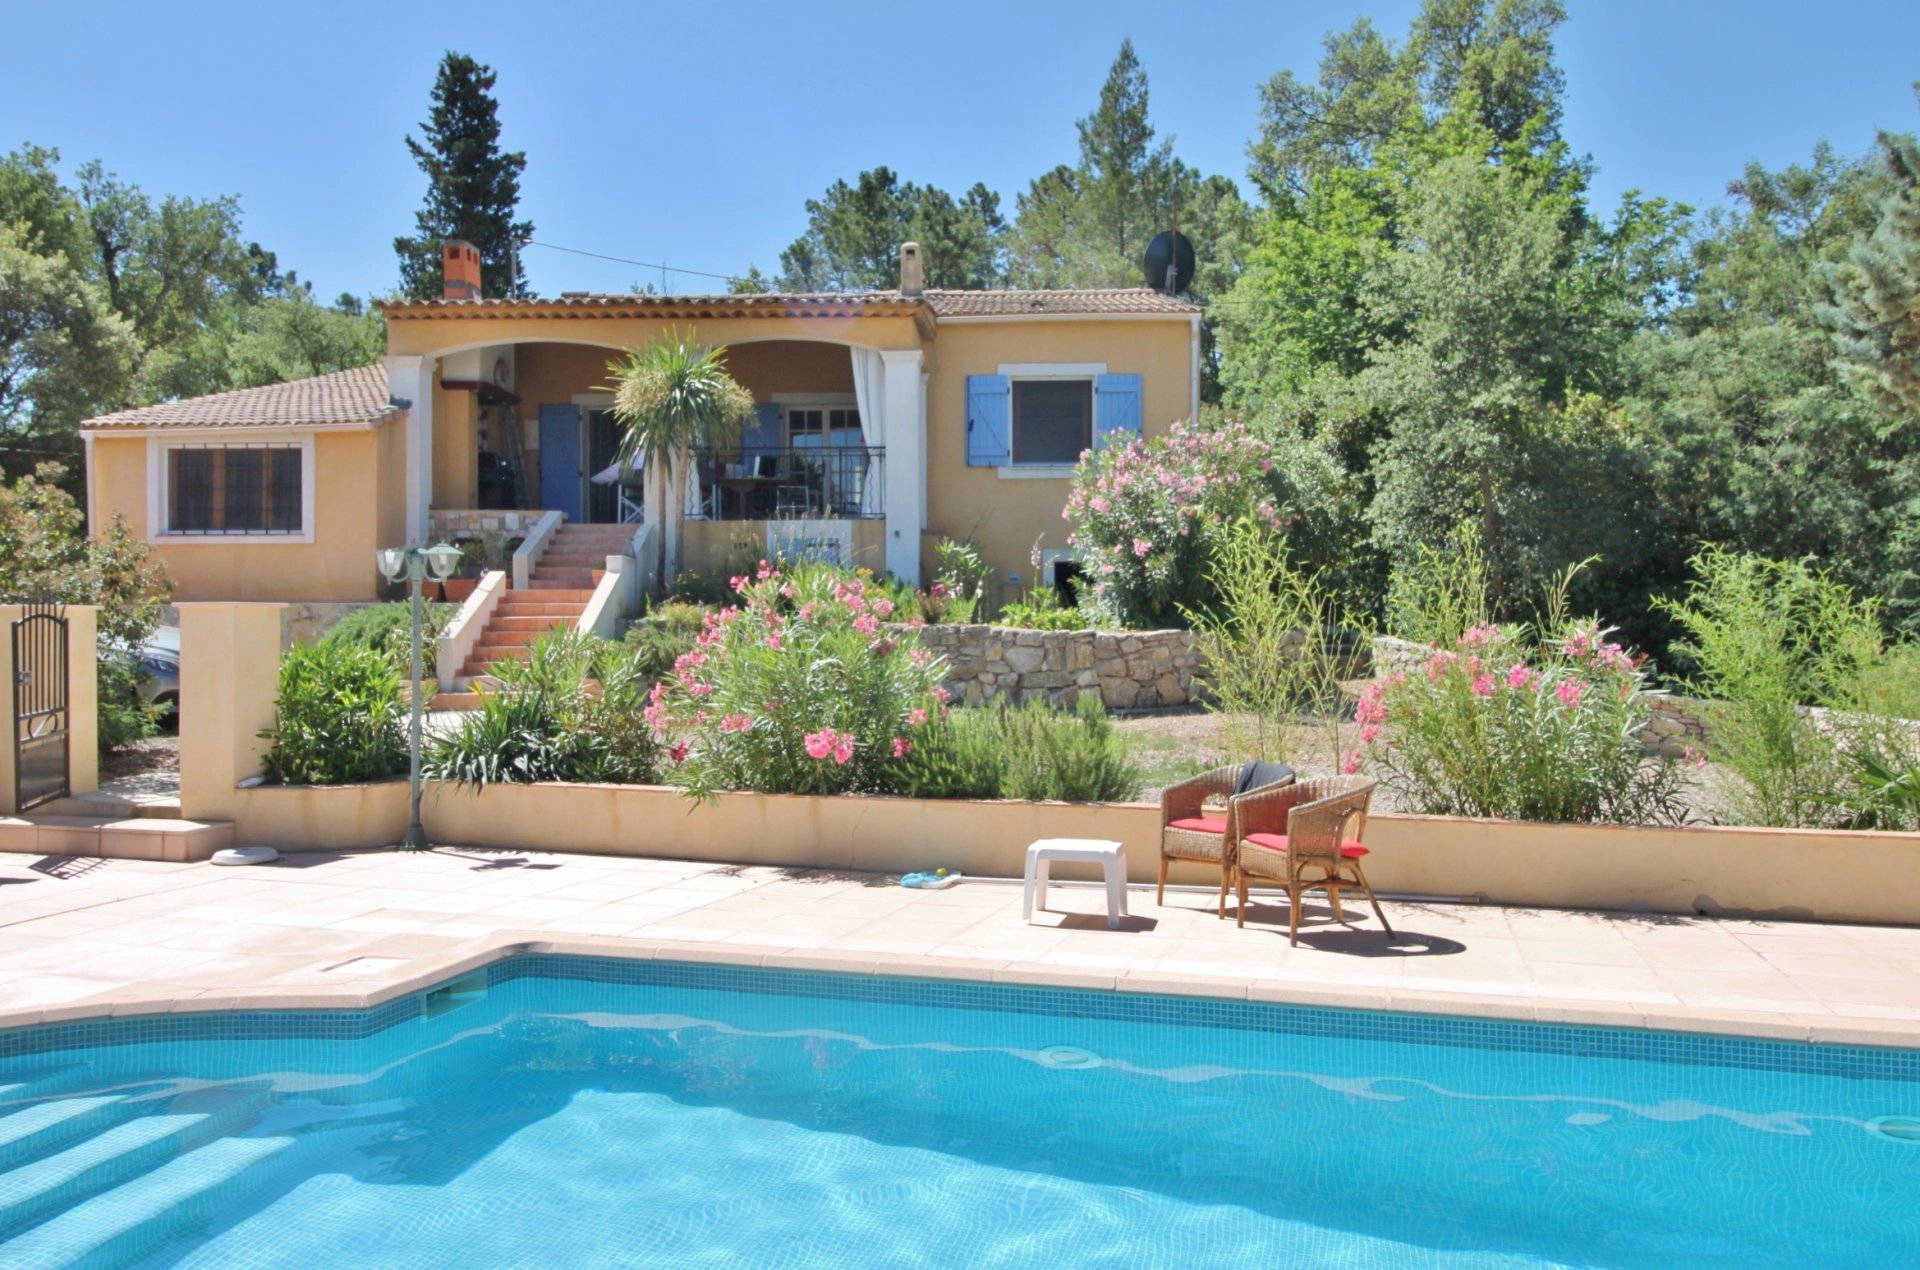 Mooie villa met zwembad en veel ruimte